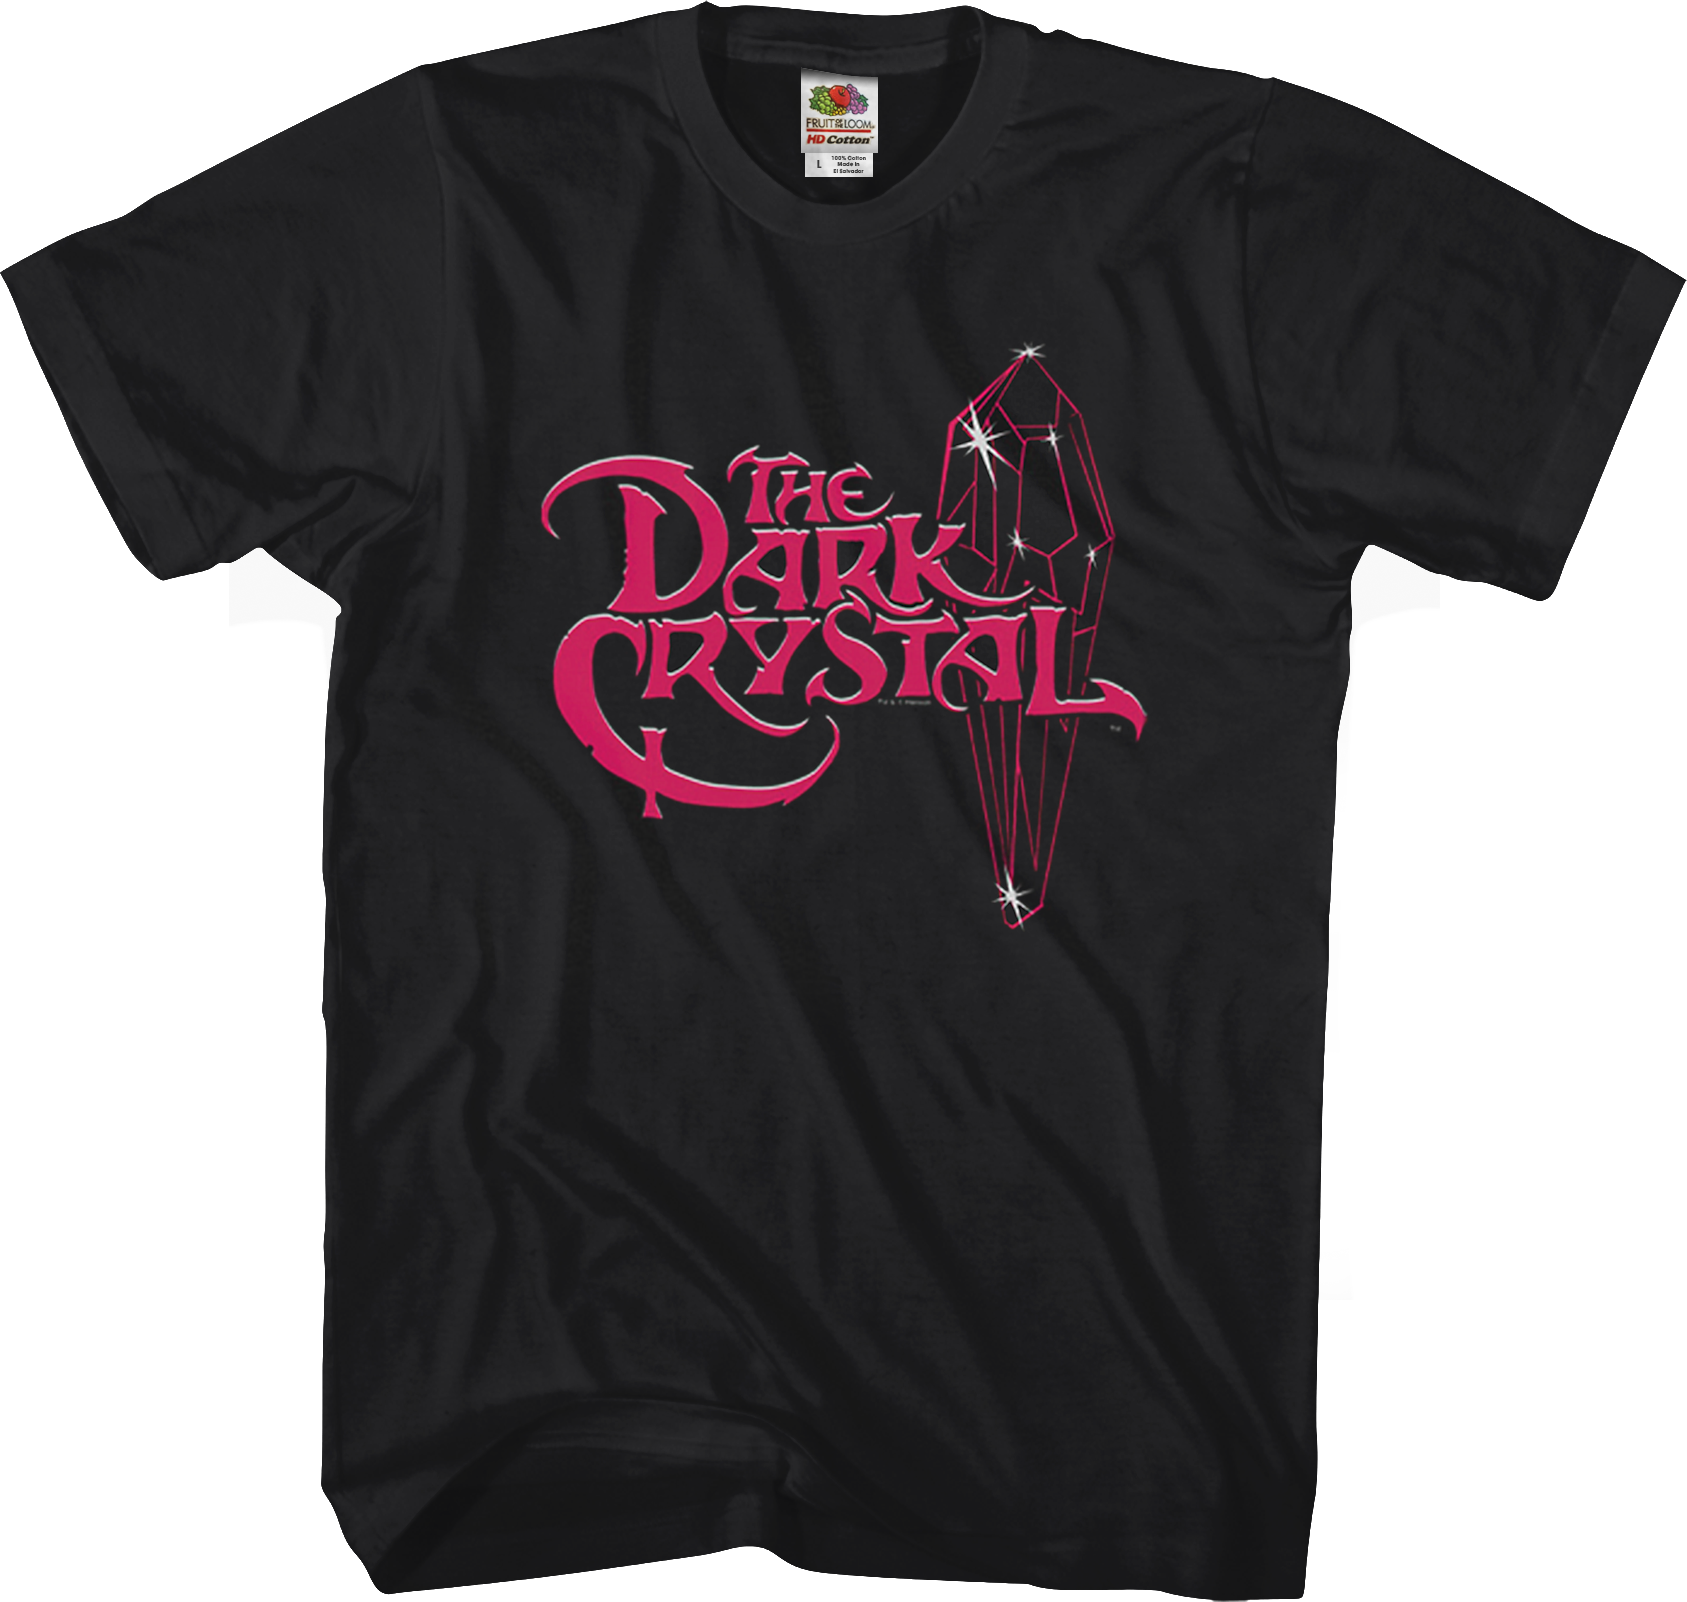 dark crystal merchandise